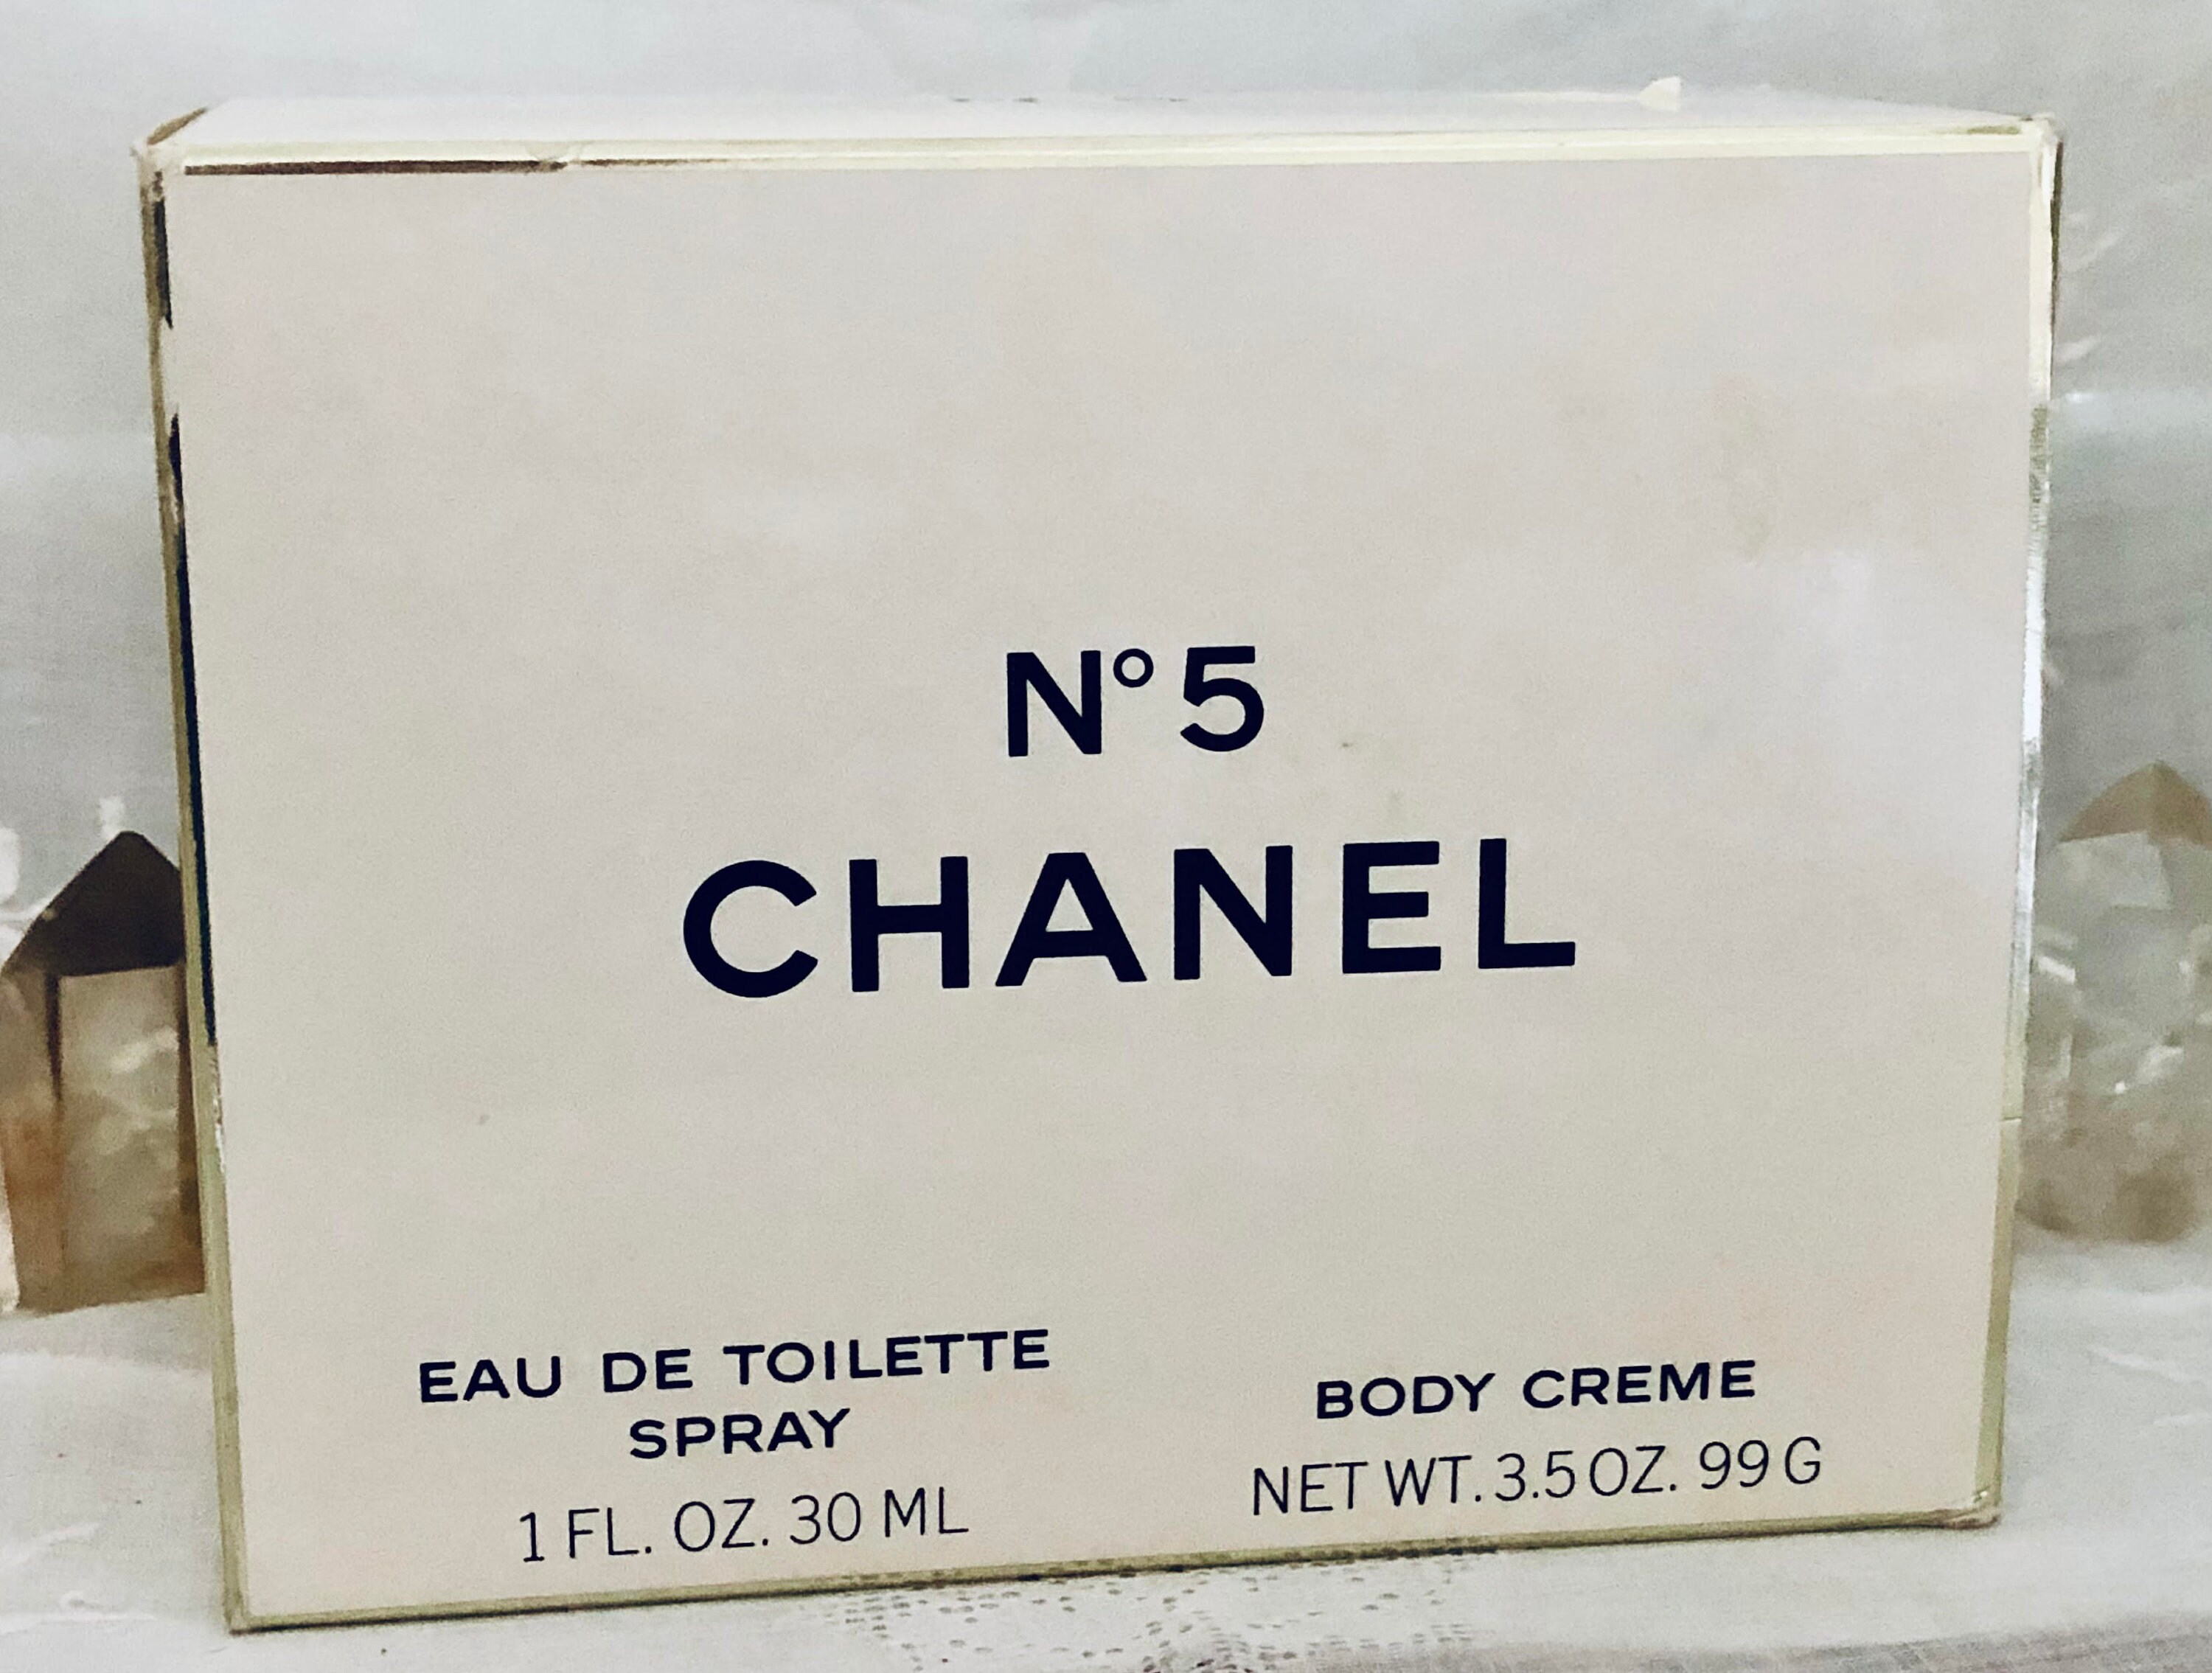 Buy Chanel Coffret Set Cuir De Russie No. 22 Bois Des Iles Online in India  